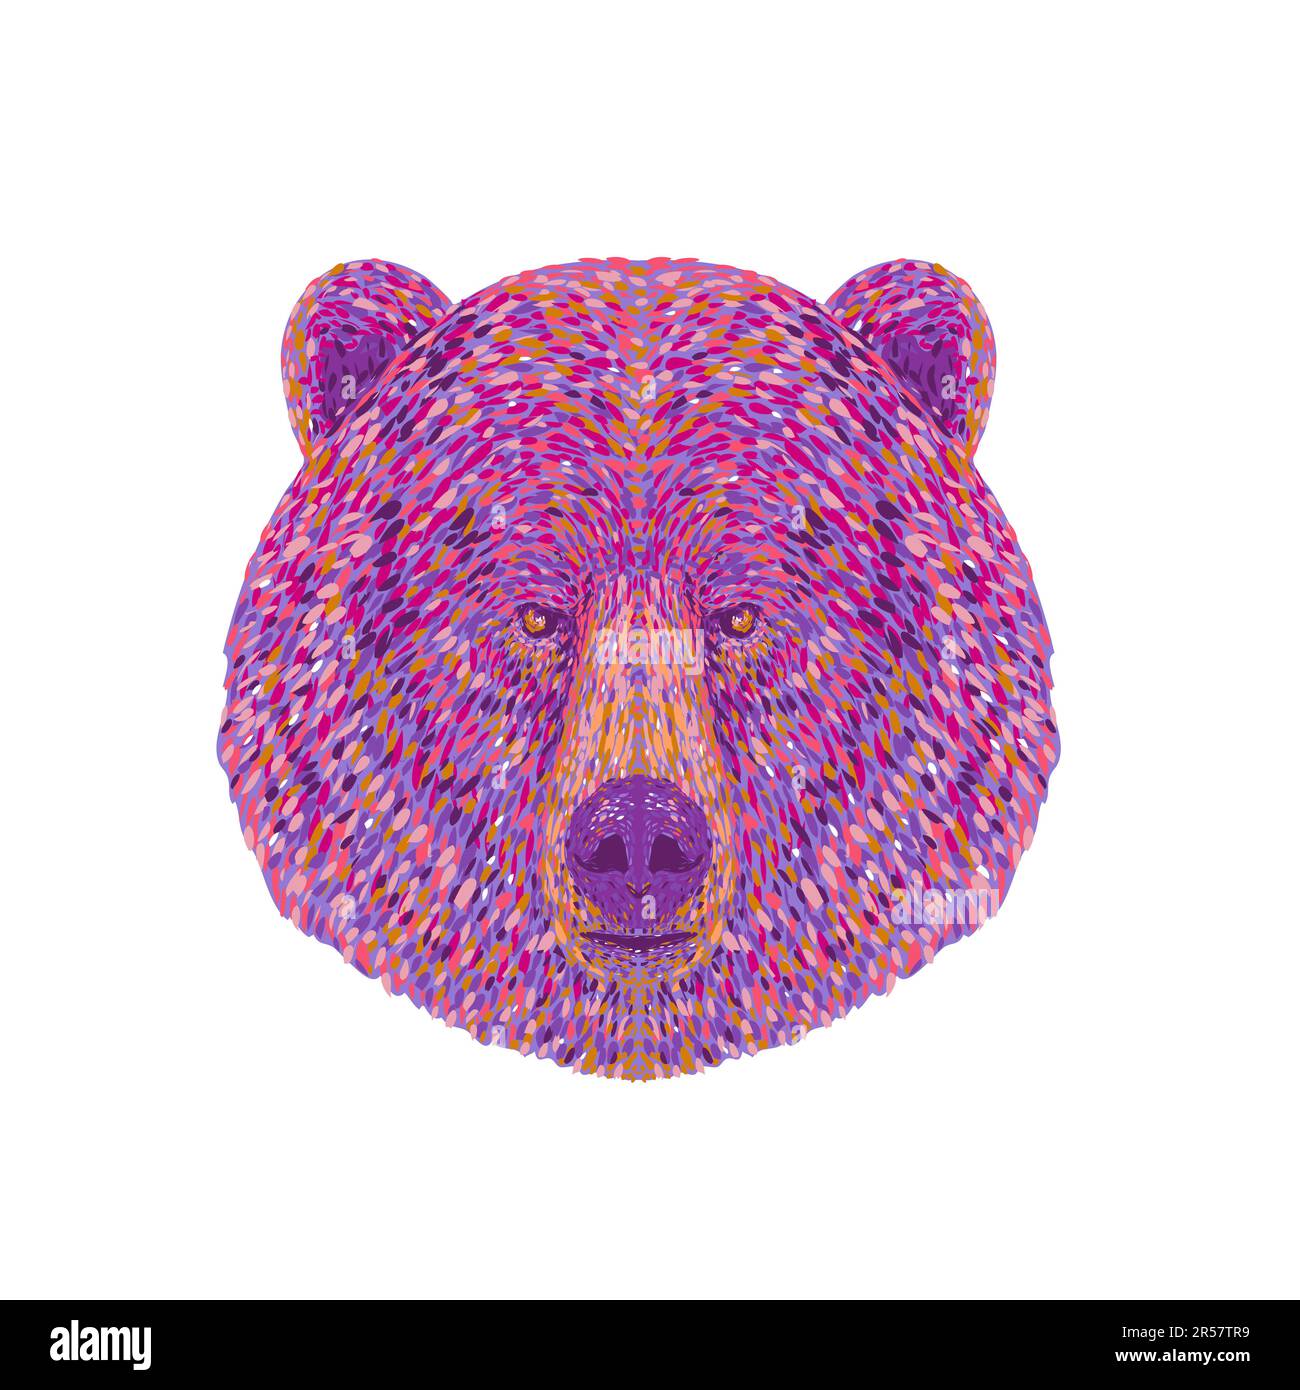 Pointillist, Impressionist oder Pop-Art-Darstellung des Kopfes eines Grizzlybären oder des nordamerikanischen Braunbären oder einfach nur Grizzly von Fron aus gesehen Stockfoto